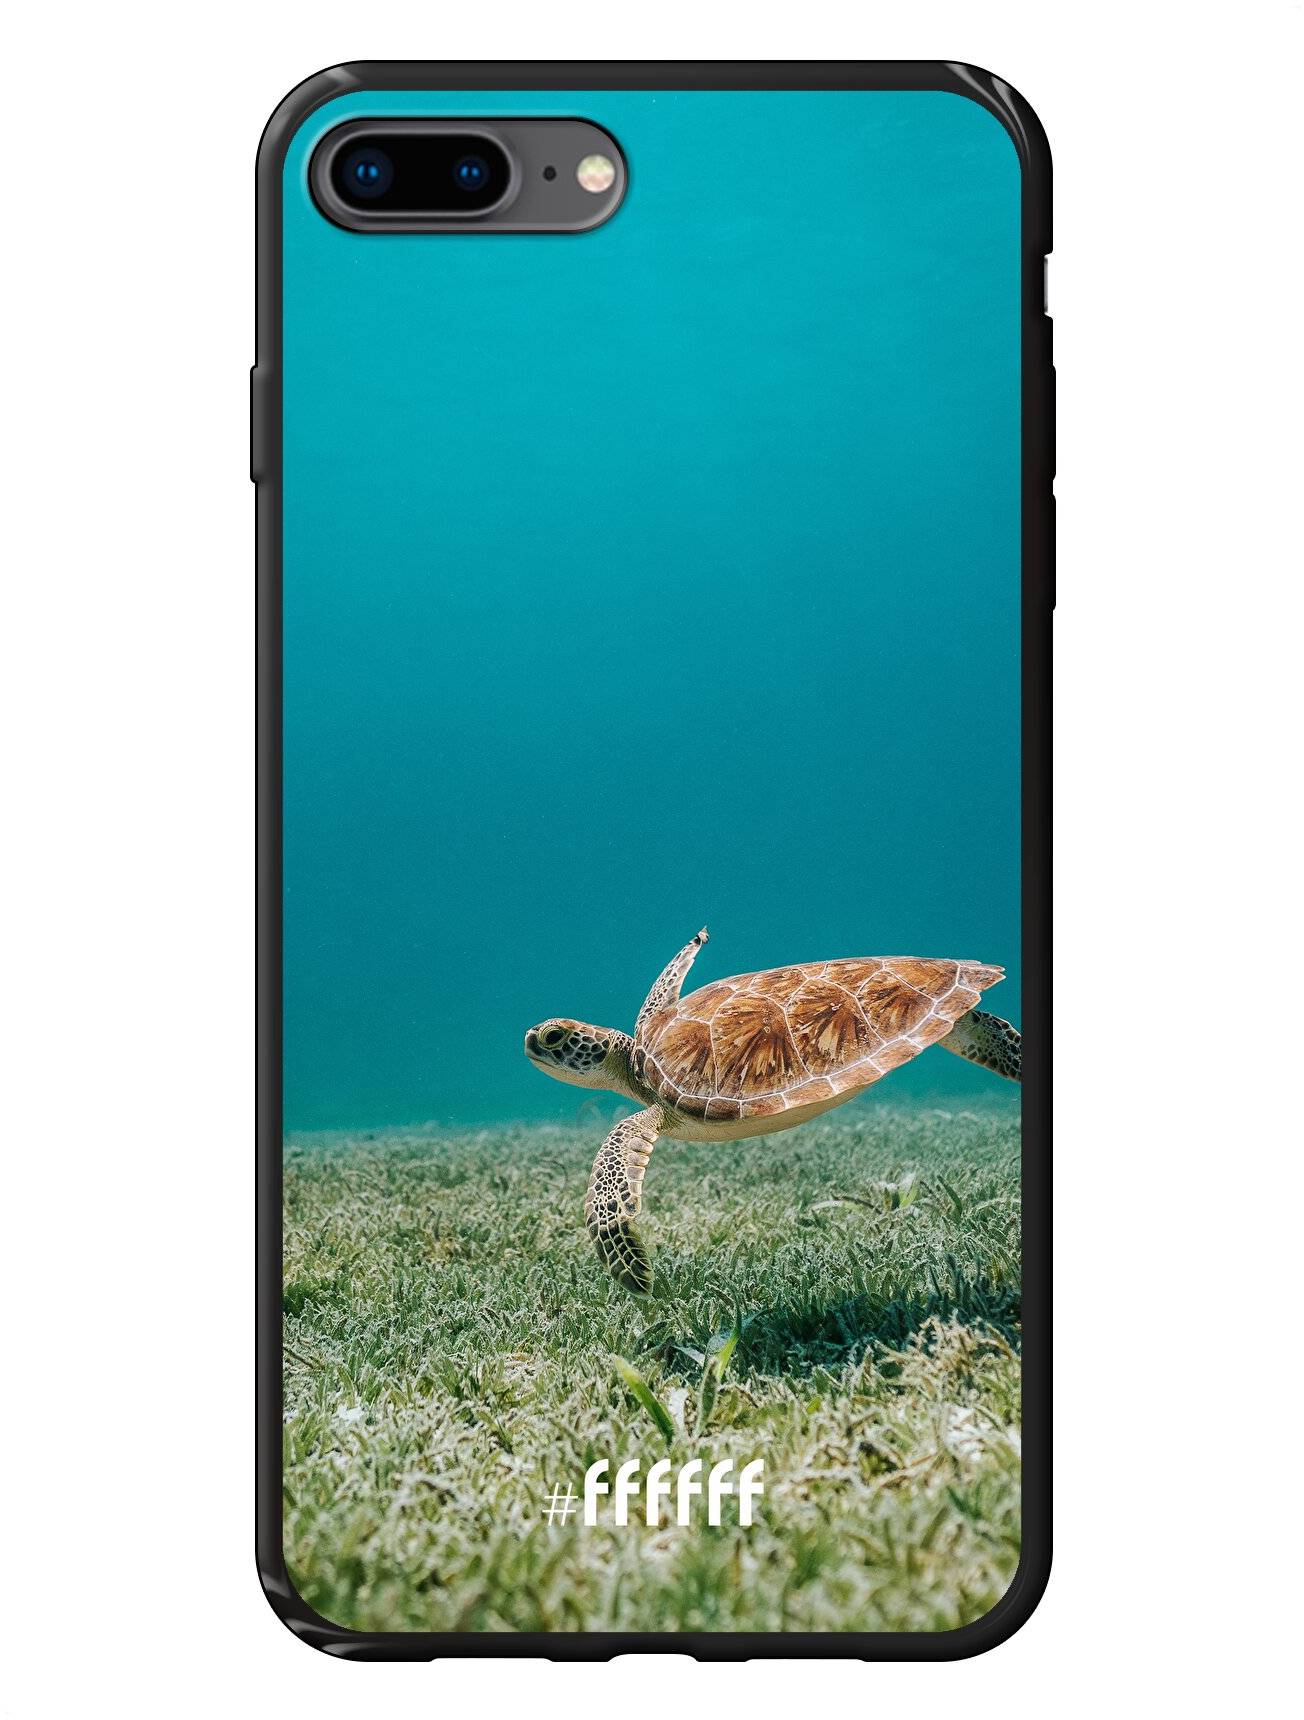 Turtle iPhone 8 Plus